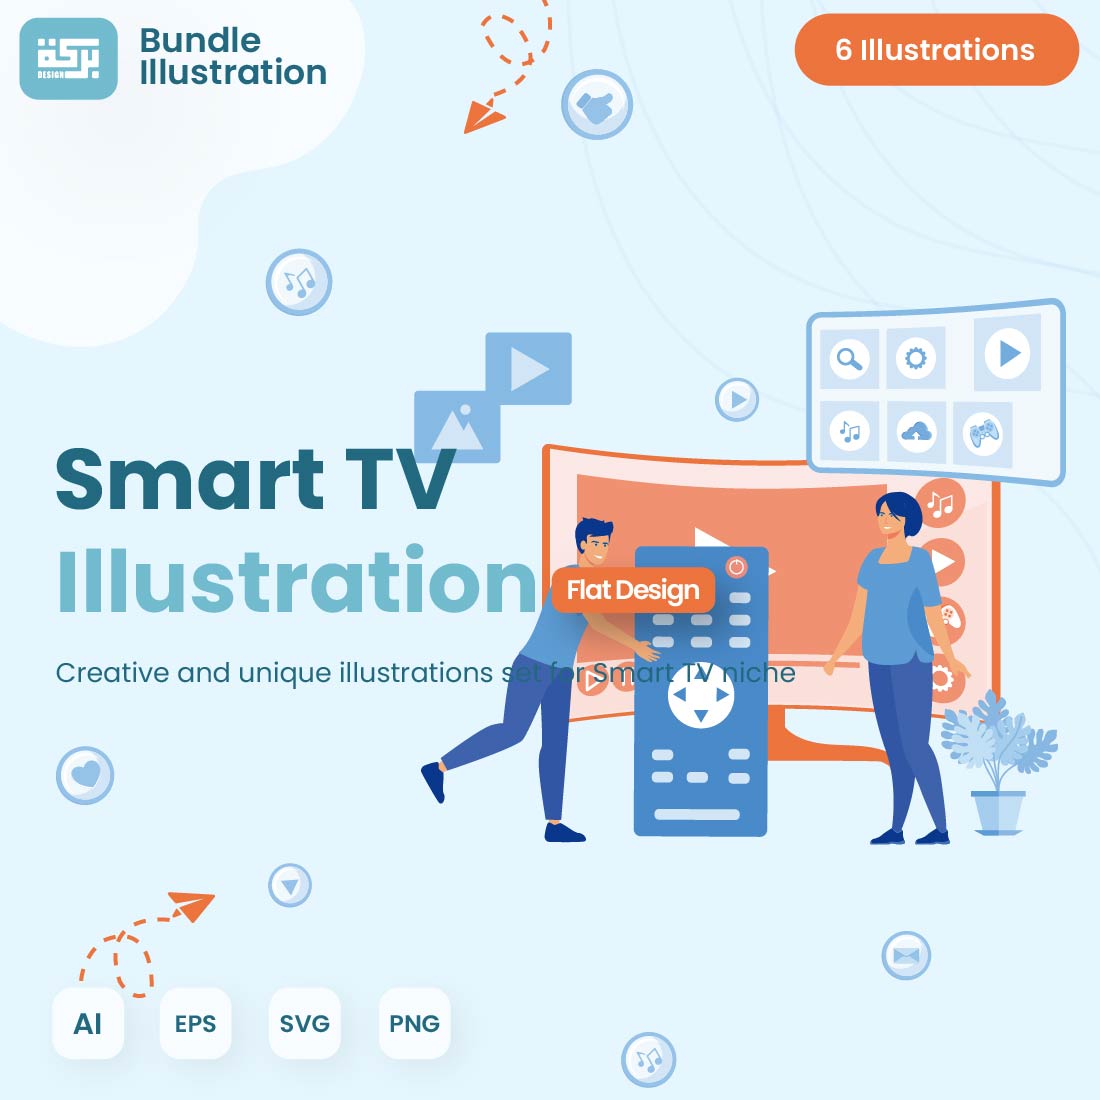 Illustration Design Smart TV cover image.